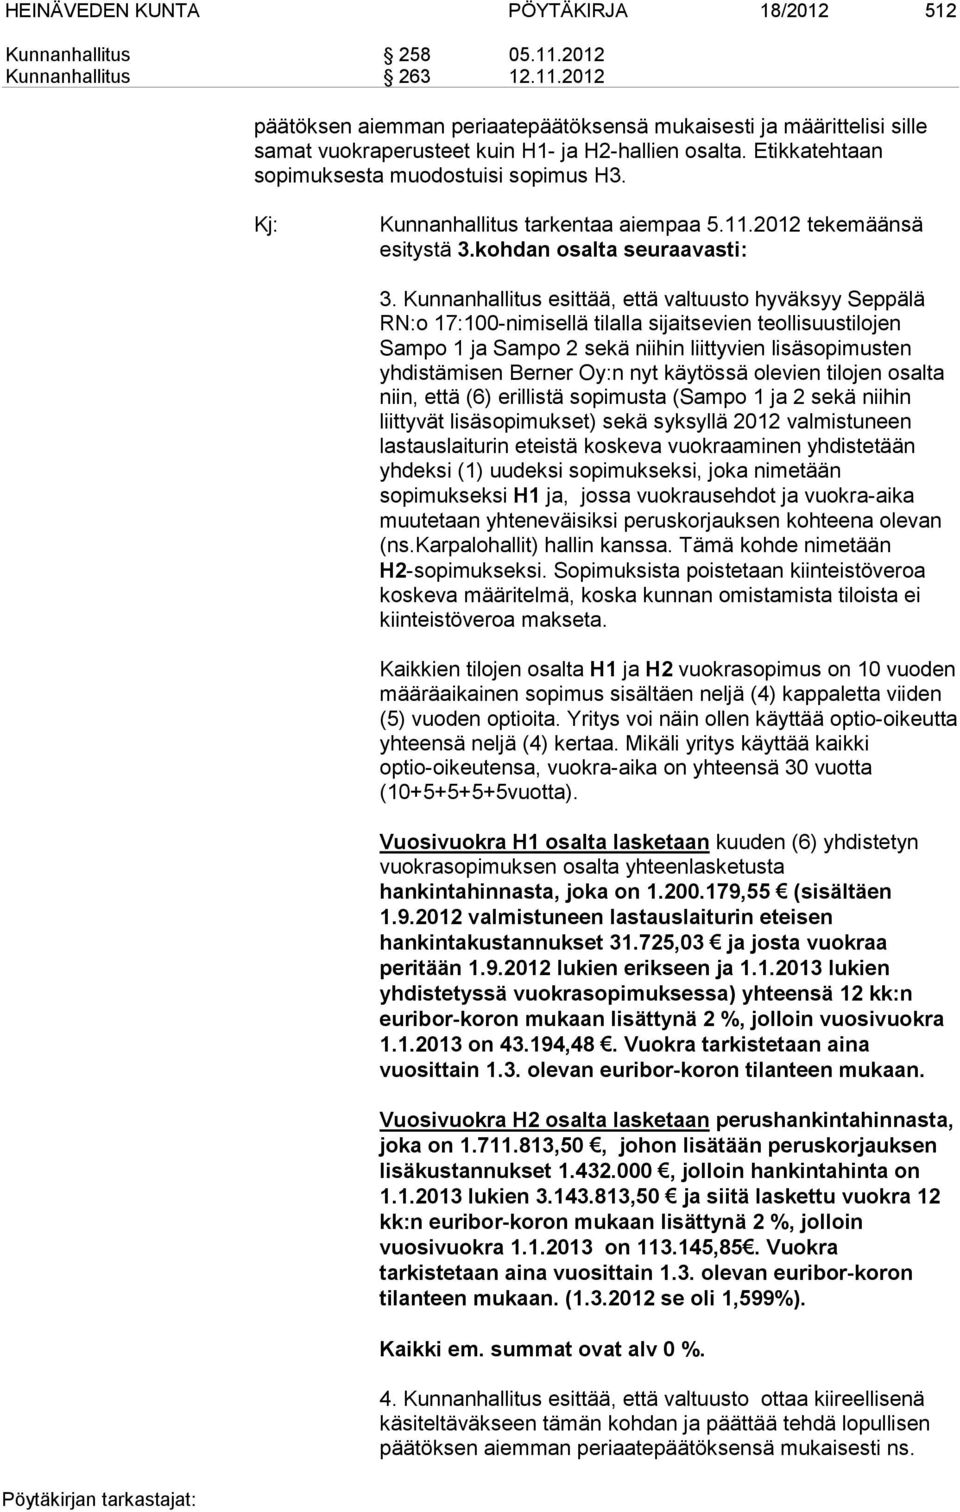 Kunnanhallitus esittää, että valtuusto hyväksyy Seppälä RN:o 17:100-nimisellä tilalla sijaitsevien teollisuustilojen Sampo 1 ja Sampo 2 sekä niihin liittyvien lisäsopimusten yhdistämisen Berner Oy:n